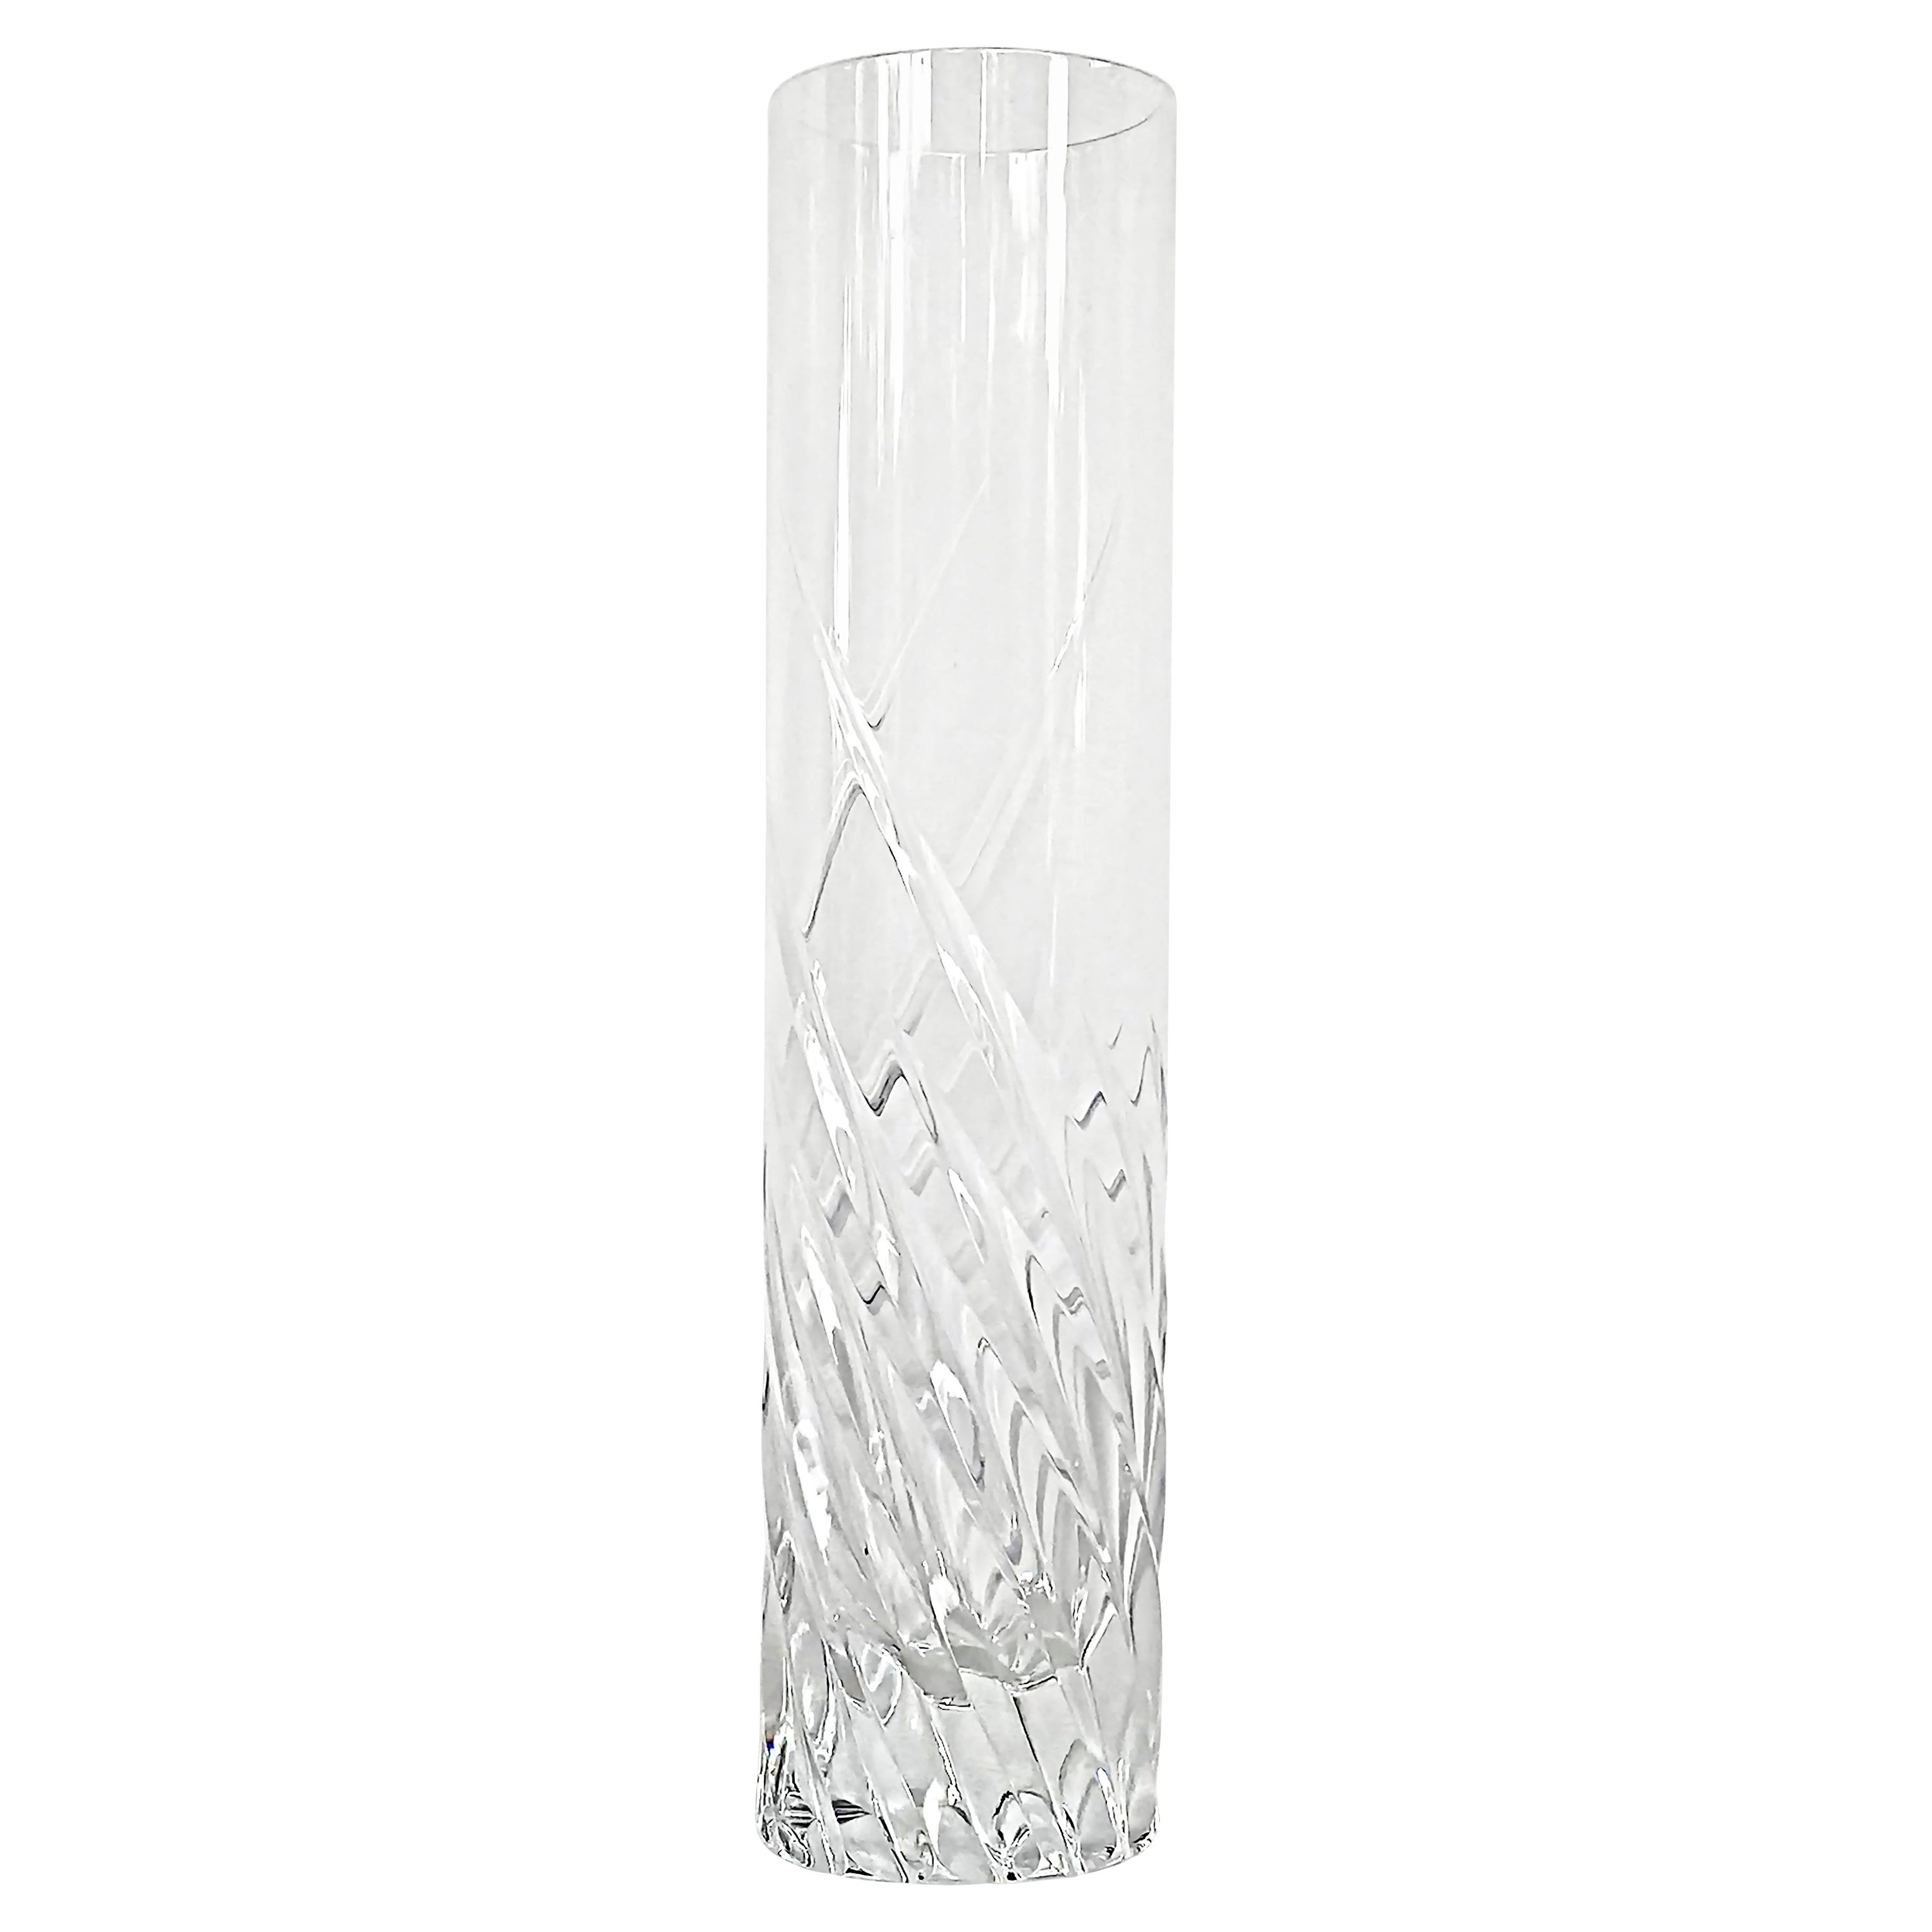 Arik Levy for Baccarat France "Spin" Crystal Glass Vase